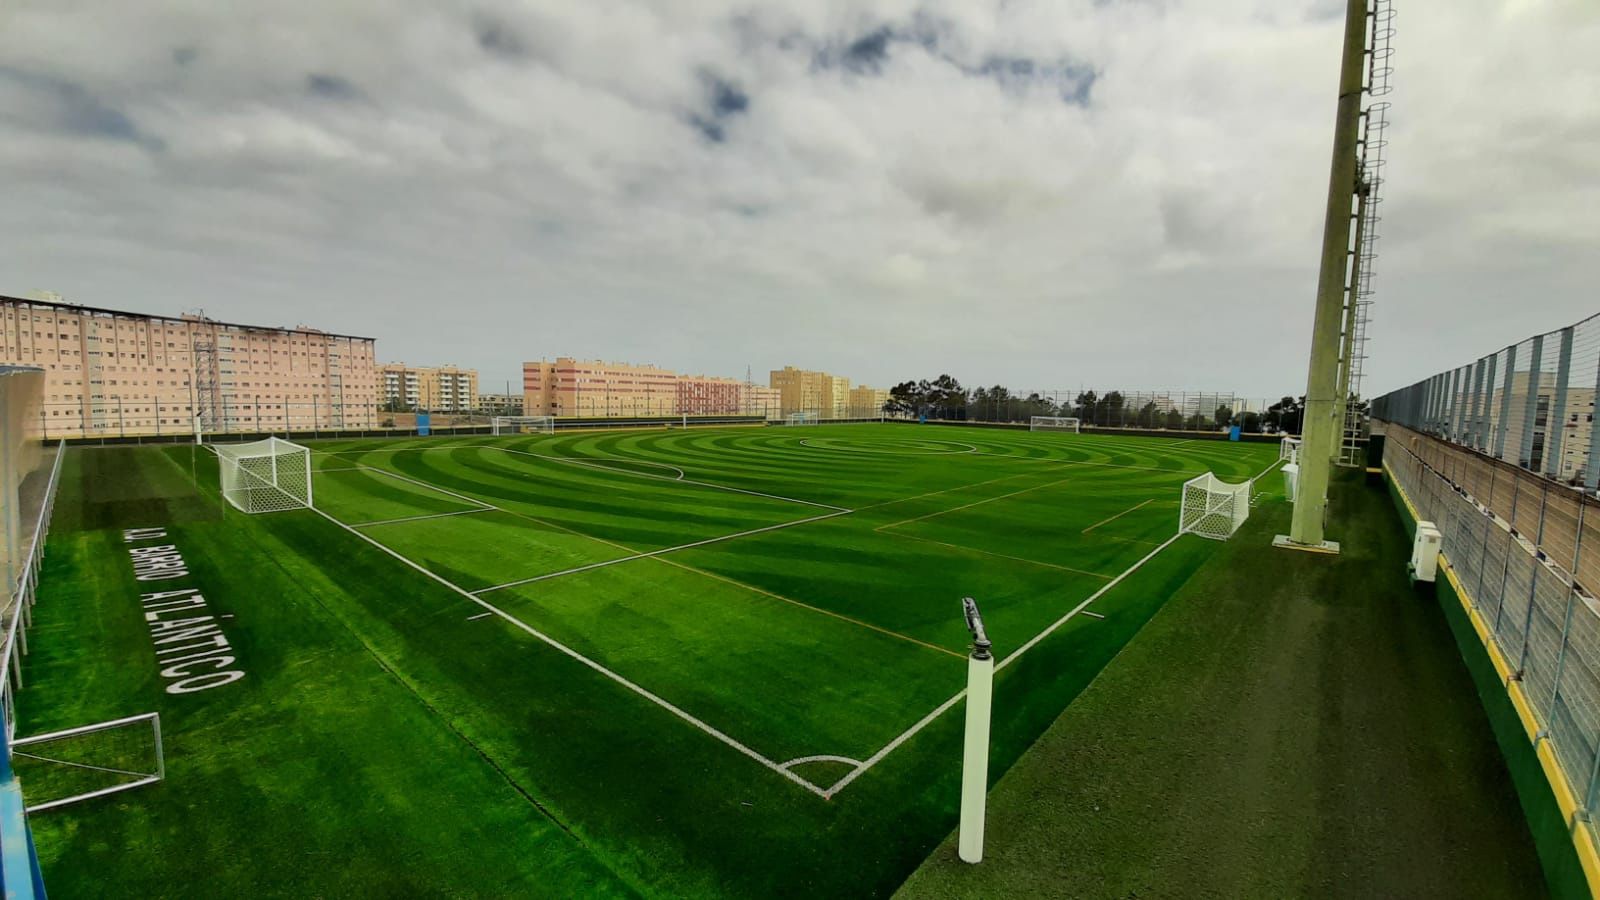 El campo de fútbol Parque Atlántico contará con la cubierta demandada por la vecindad